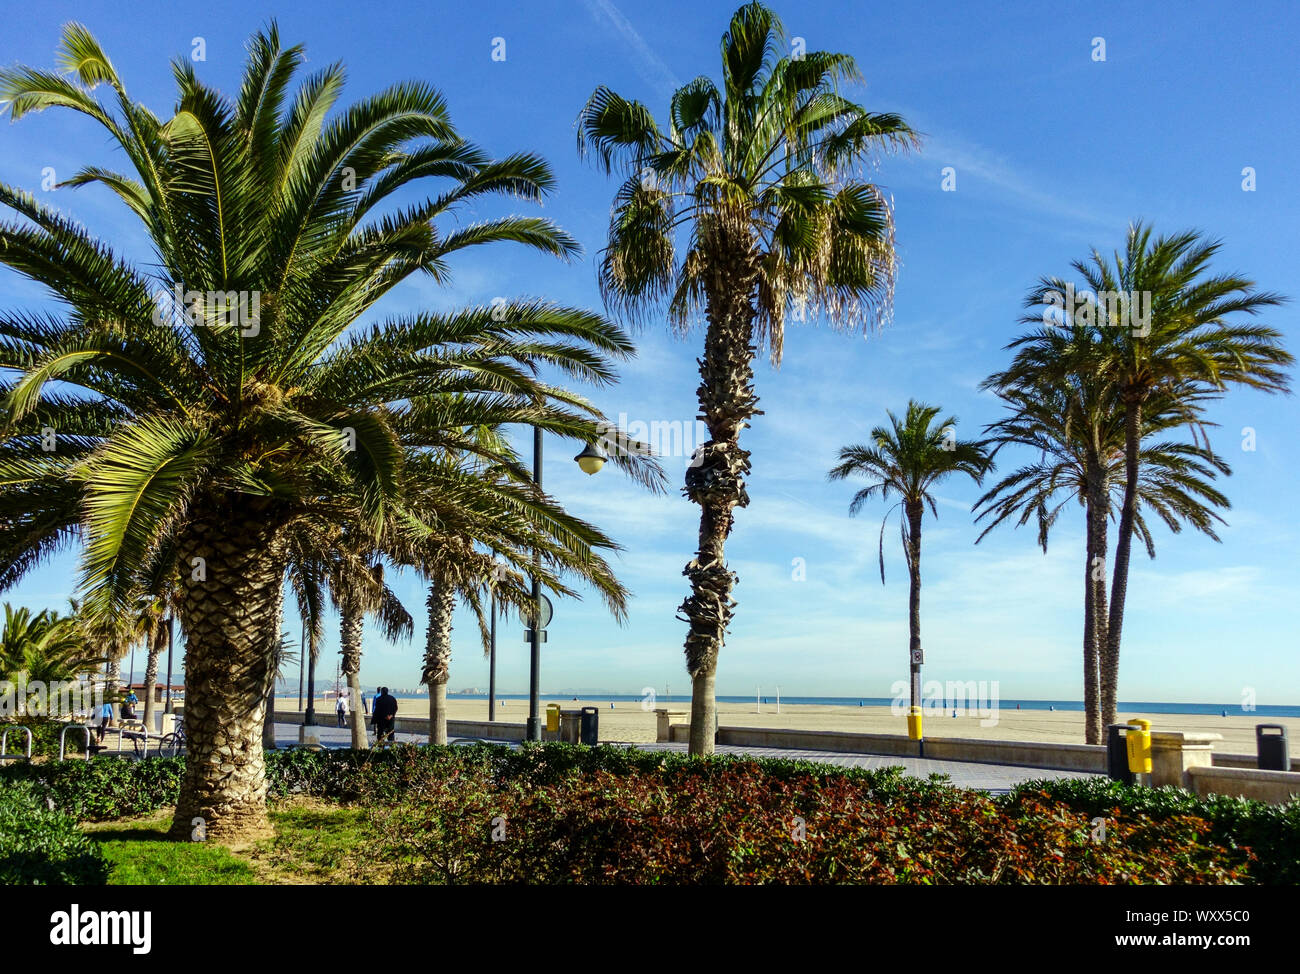 Spain Valencia Palm trees at Valencia Malvarrosa Beach promenade Stock Photo